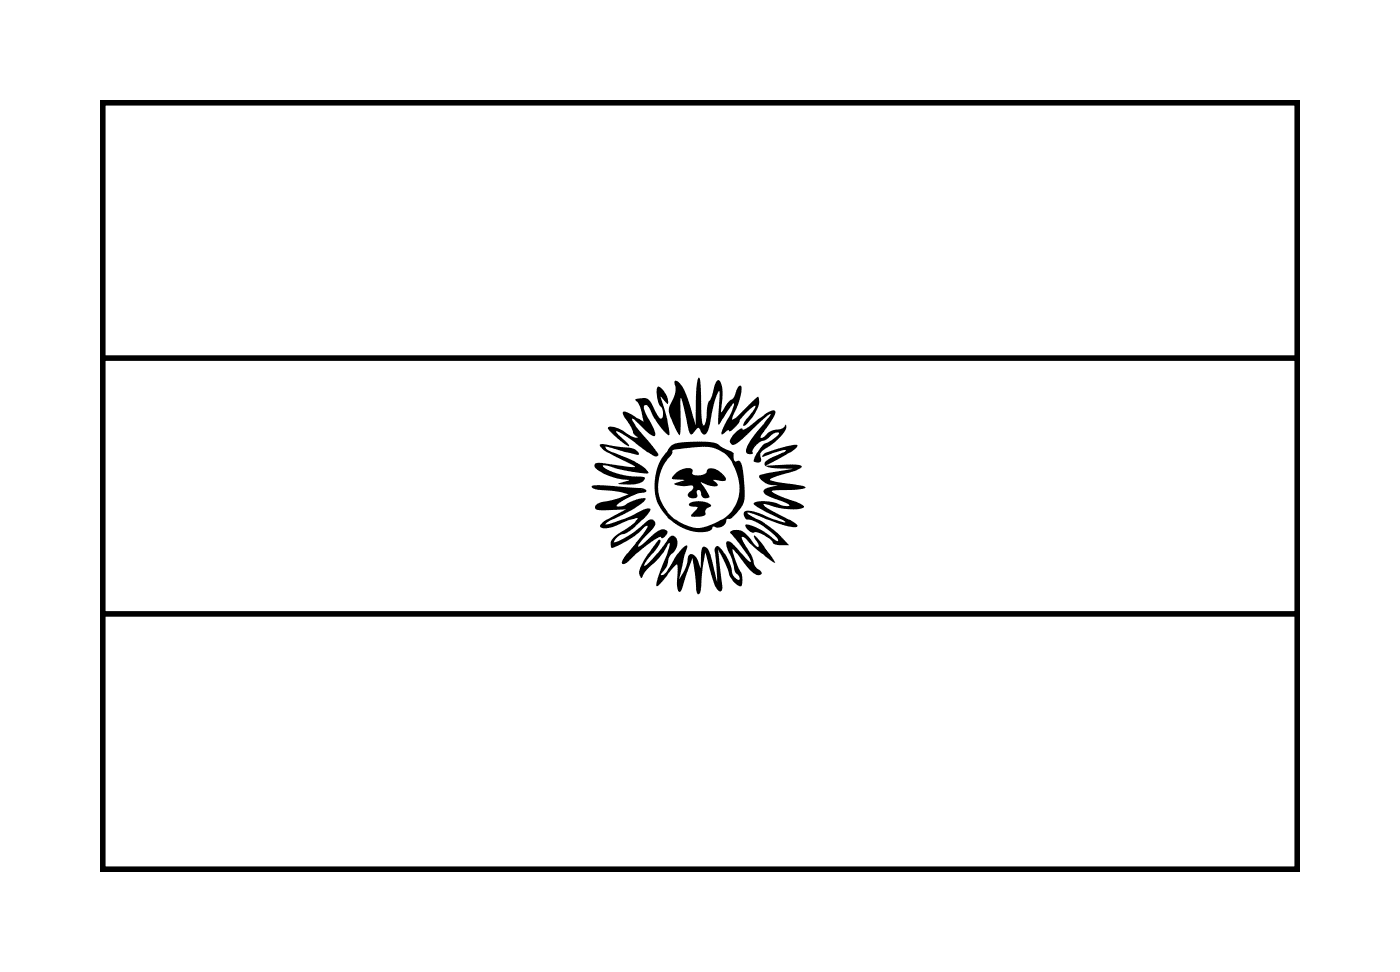  Bandiera argentina 